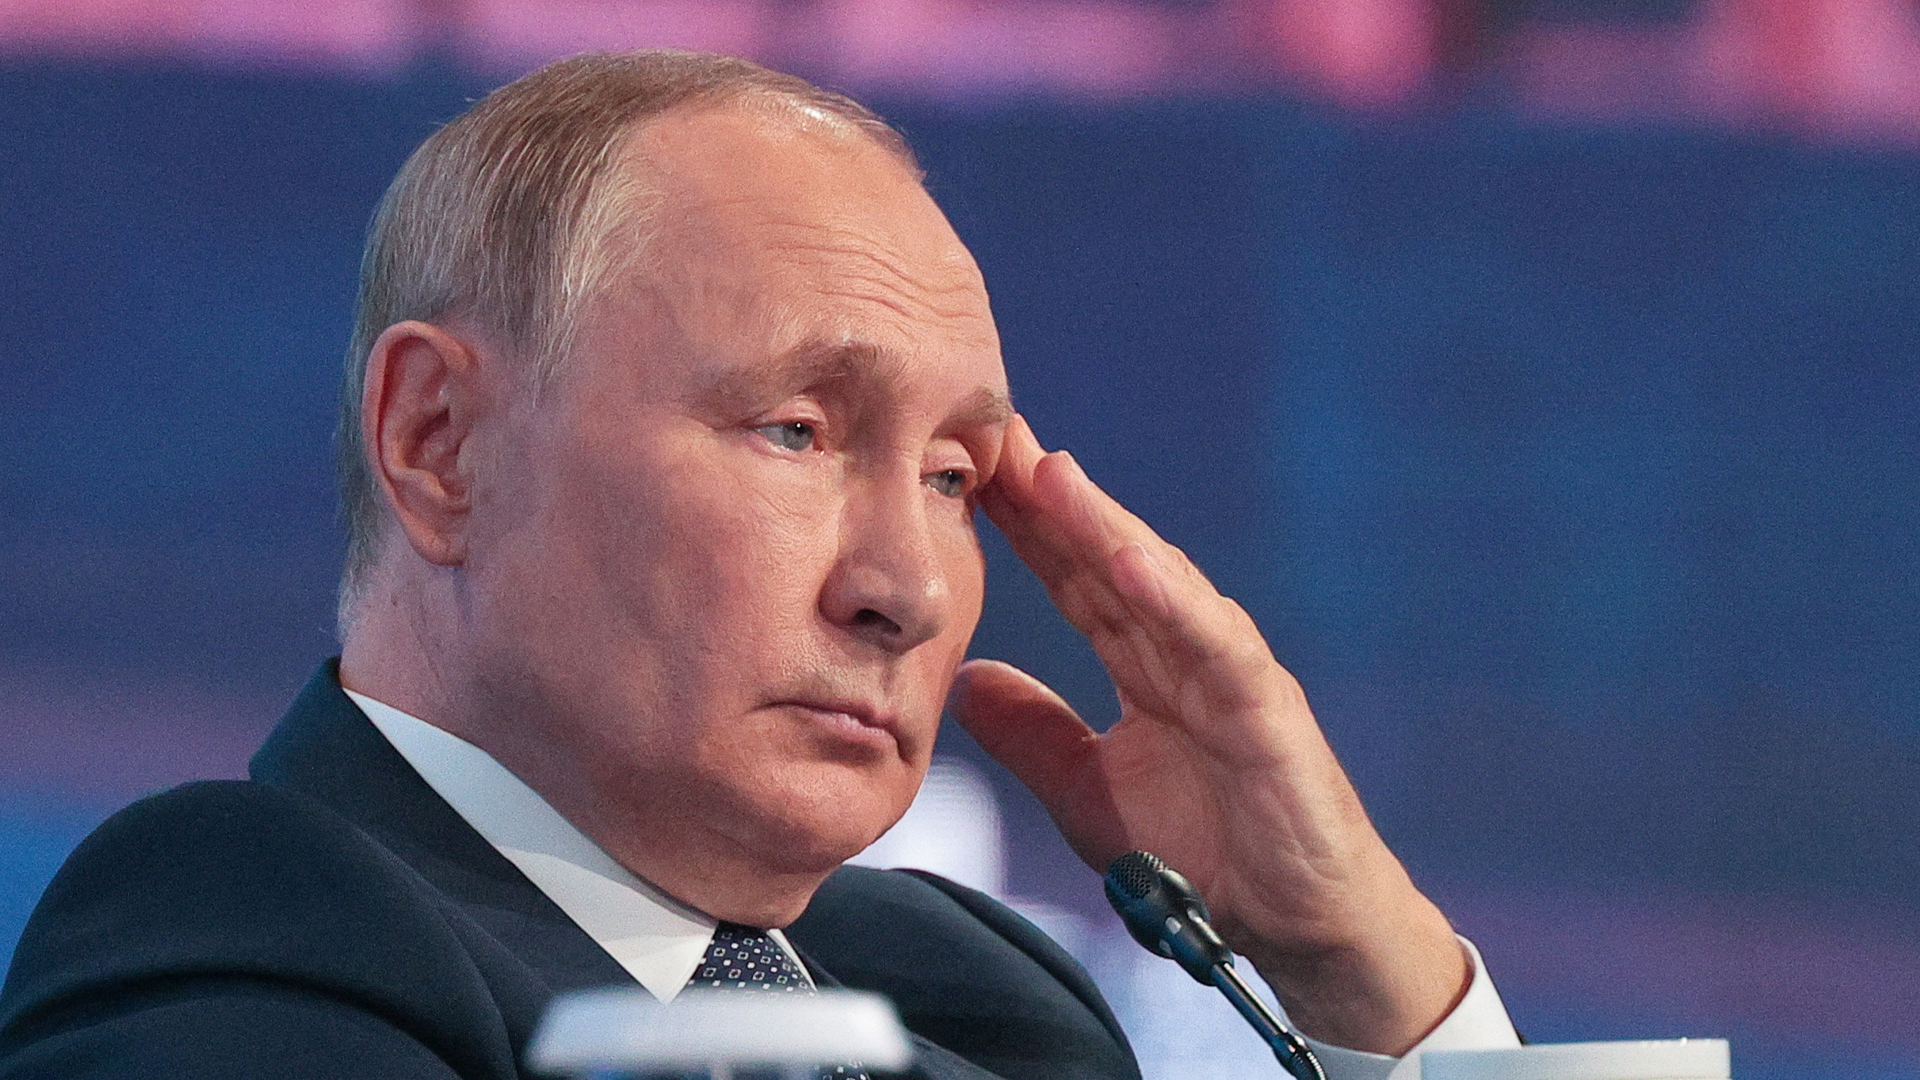 Putin, admitió que la situación en cuatro zonas de Ucrania que Moscú ha declarado parte de Rusia es “extremadamente difícil” y ordenó a los servicios de seguridad que intensifiquen la vigilancia para asegurar sus fronteras y combatir nuevas amenazas. (REUTERS)